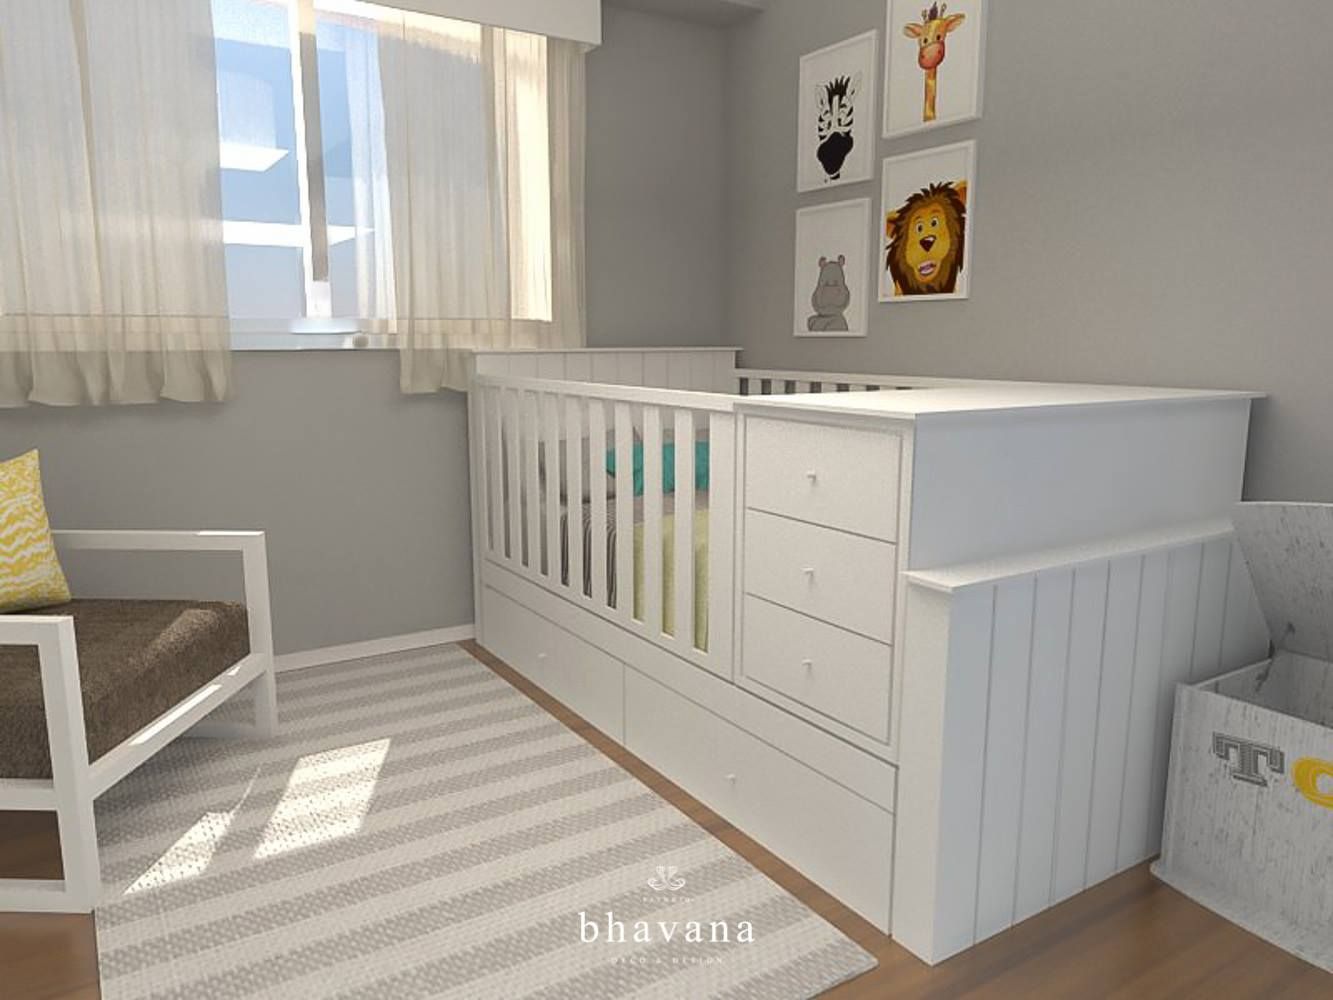 Obra Blanco Encalada - Diseño Habitación Infantil, Bhavana Bhavana غرفة الاطفال